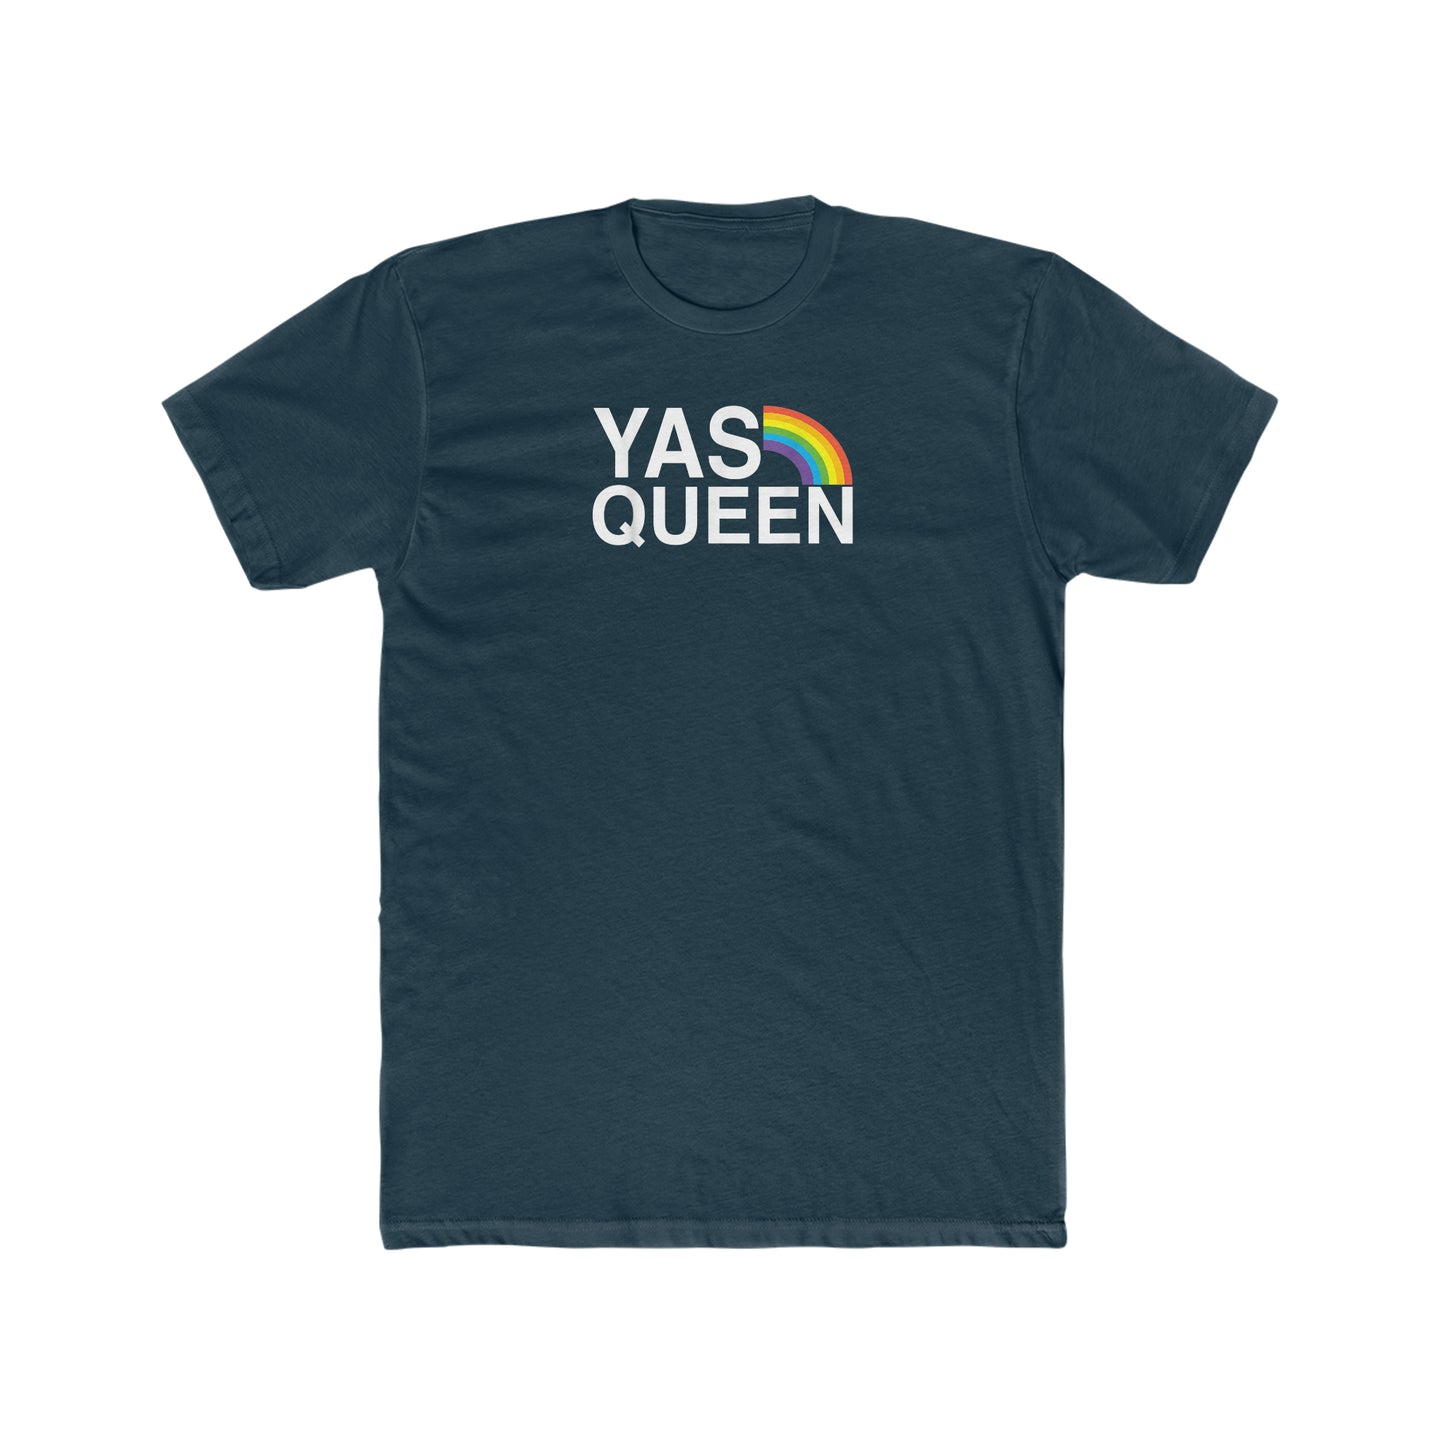 Yas Queen!